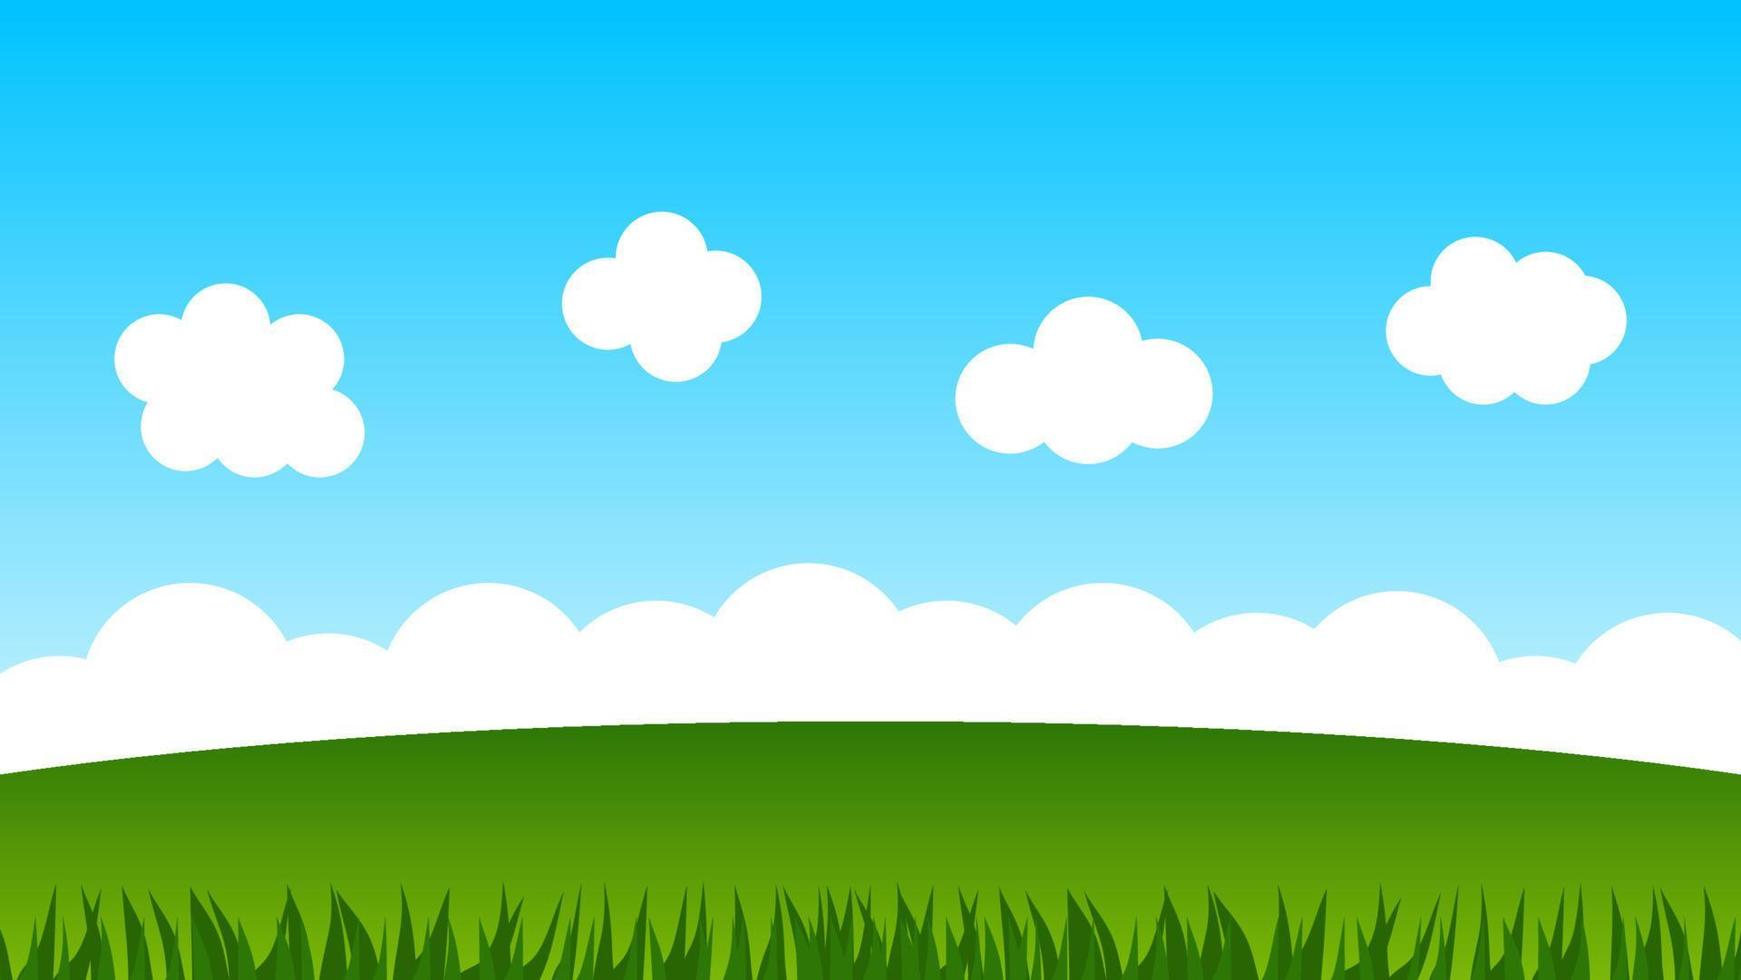 landskap tecknad scen med gröna kullar och vita moln i sommar blå himmel bakgrund vektor